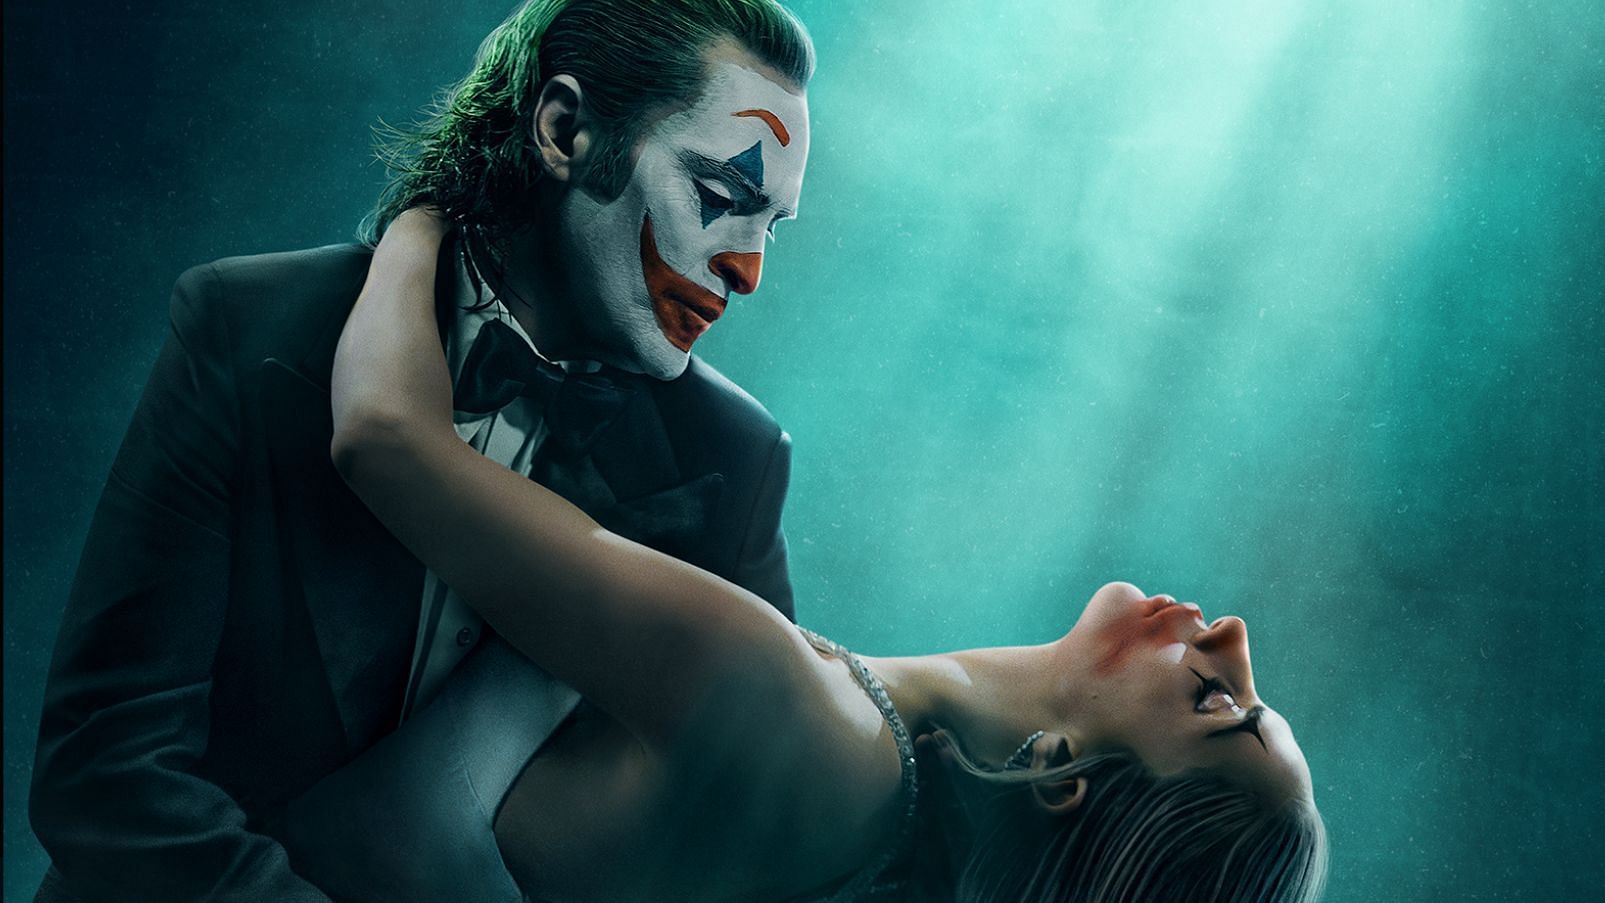 A poster for Joker 2 (Image via @jokermovie/Twitter)